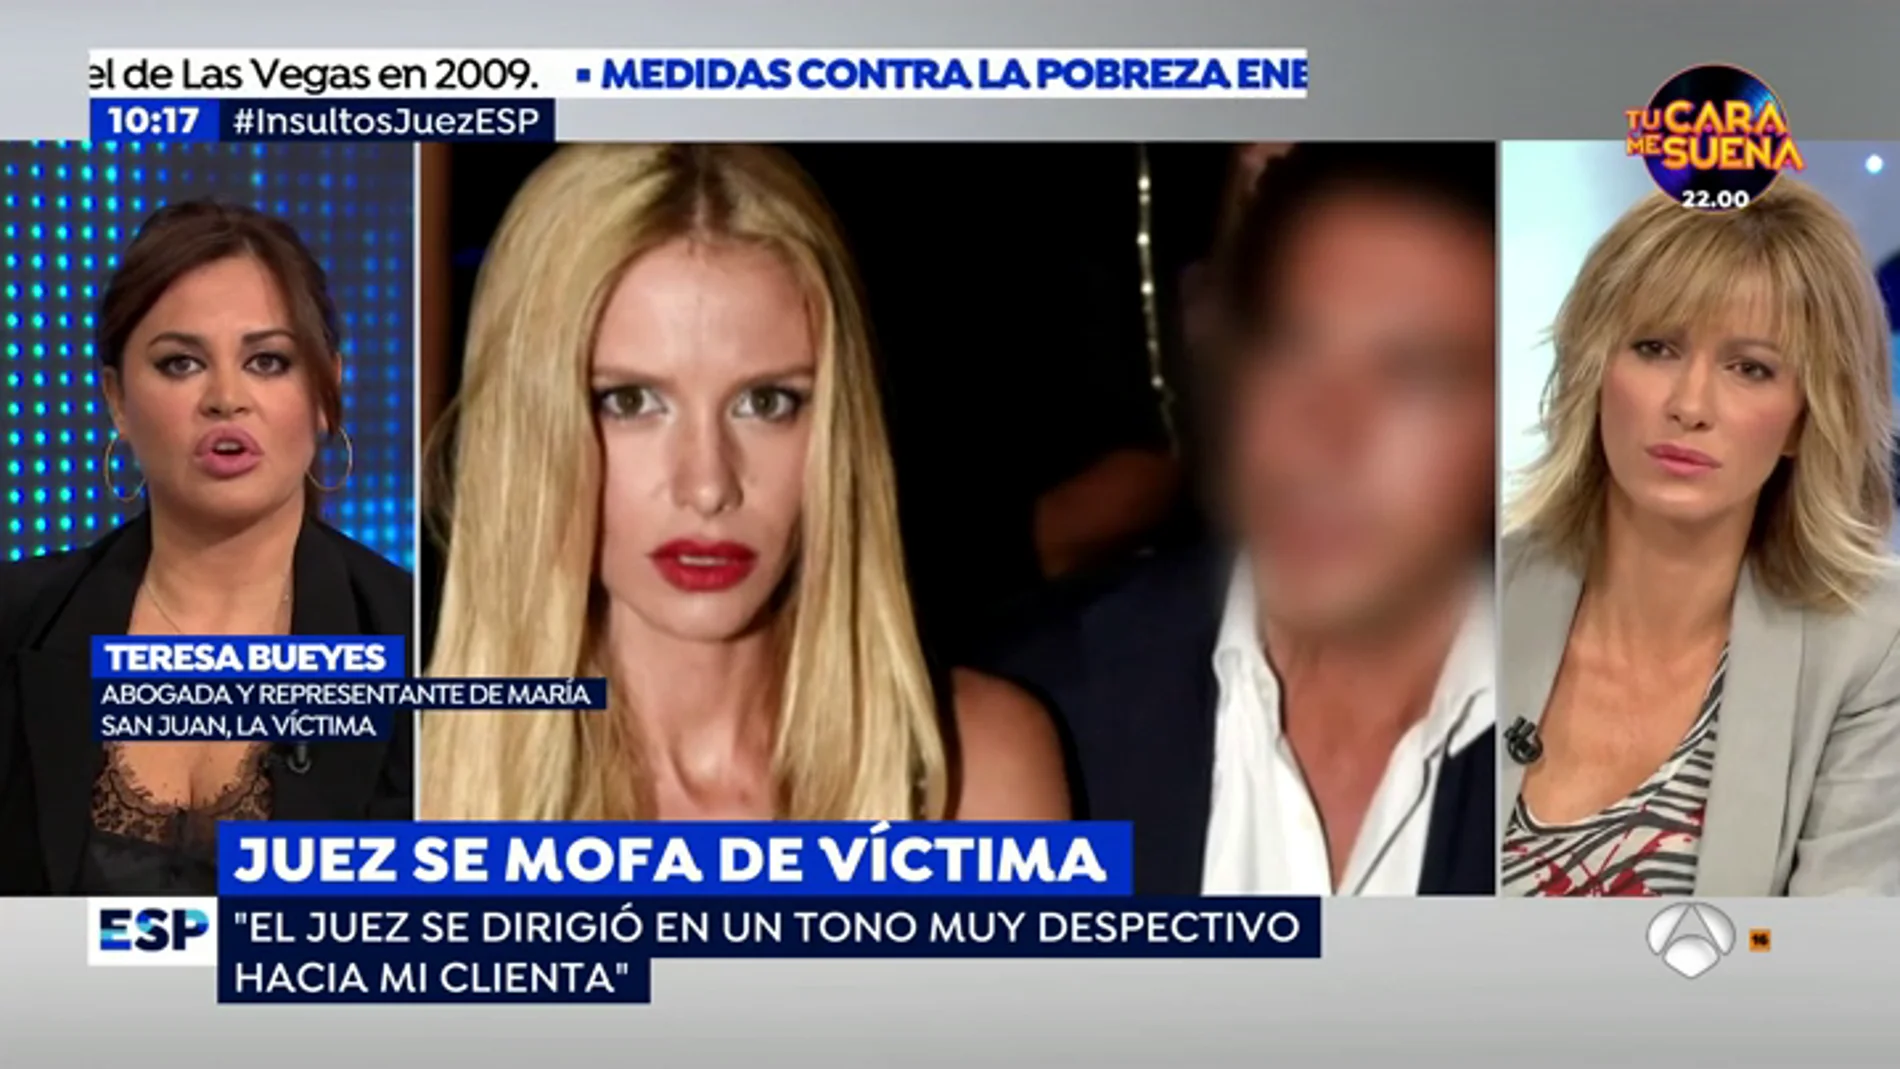 La abogada de María San Juan, a la que el juez llamo 'hija puta': "Es machista que se la vea como una aprovechada porque su marido sea rico"